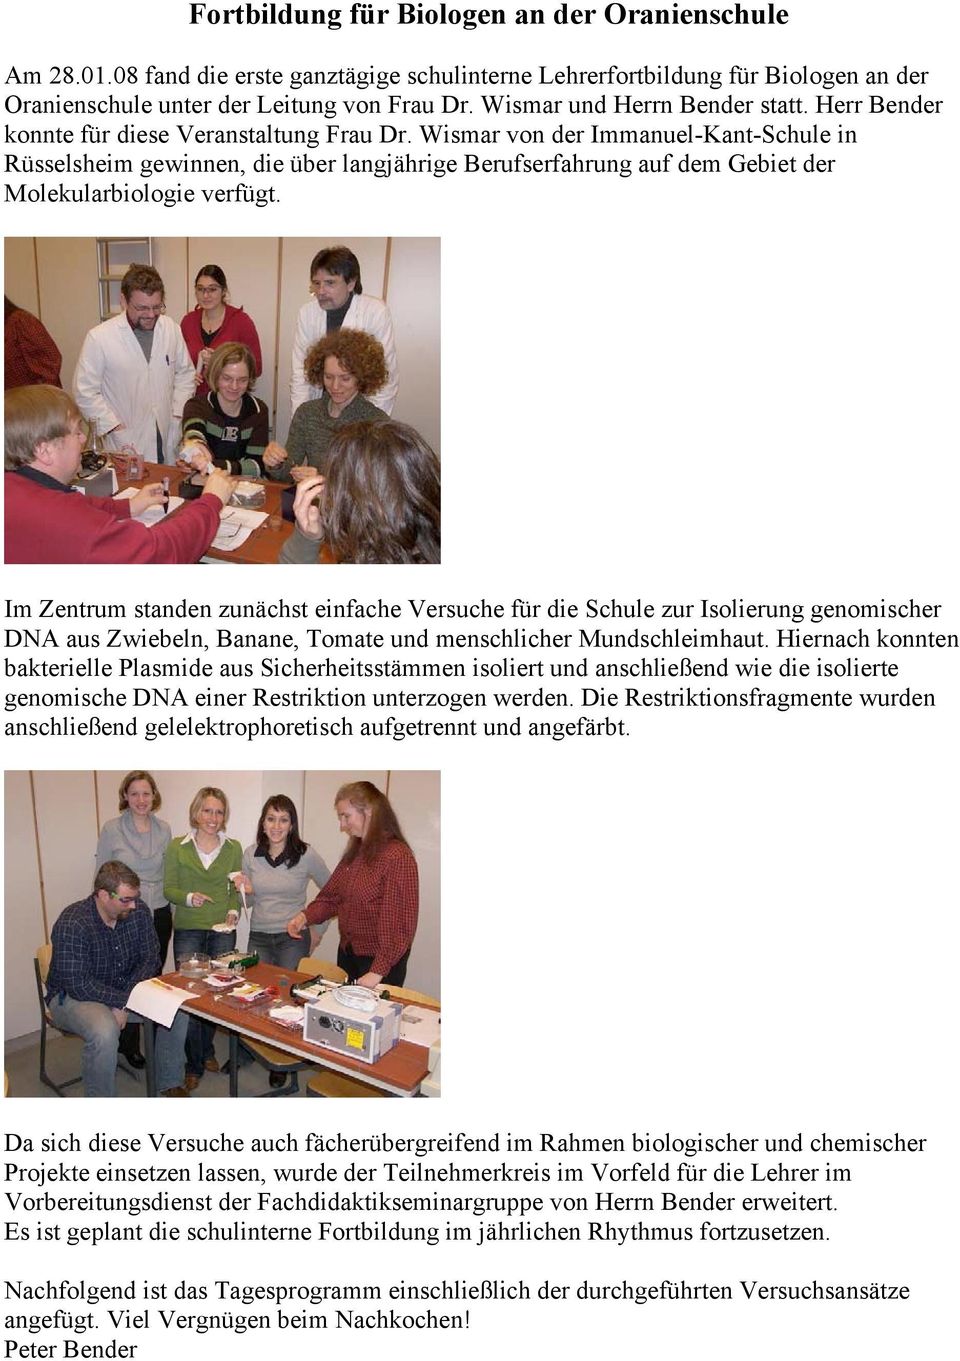 Wismar von der Immanuel-Kant-Schule in Rüsselsheim gewinnen, die über langjährige Berufserfahrung auf dem Gebiet der Molekularbiologie verfügt.